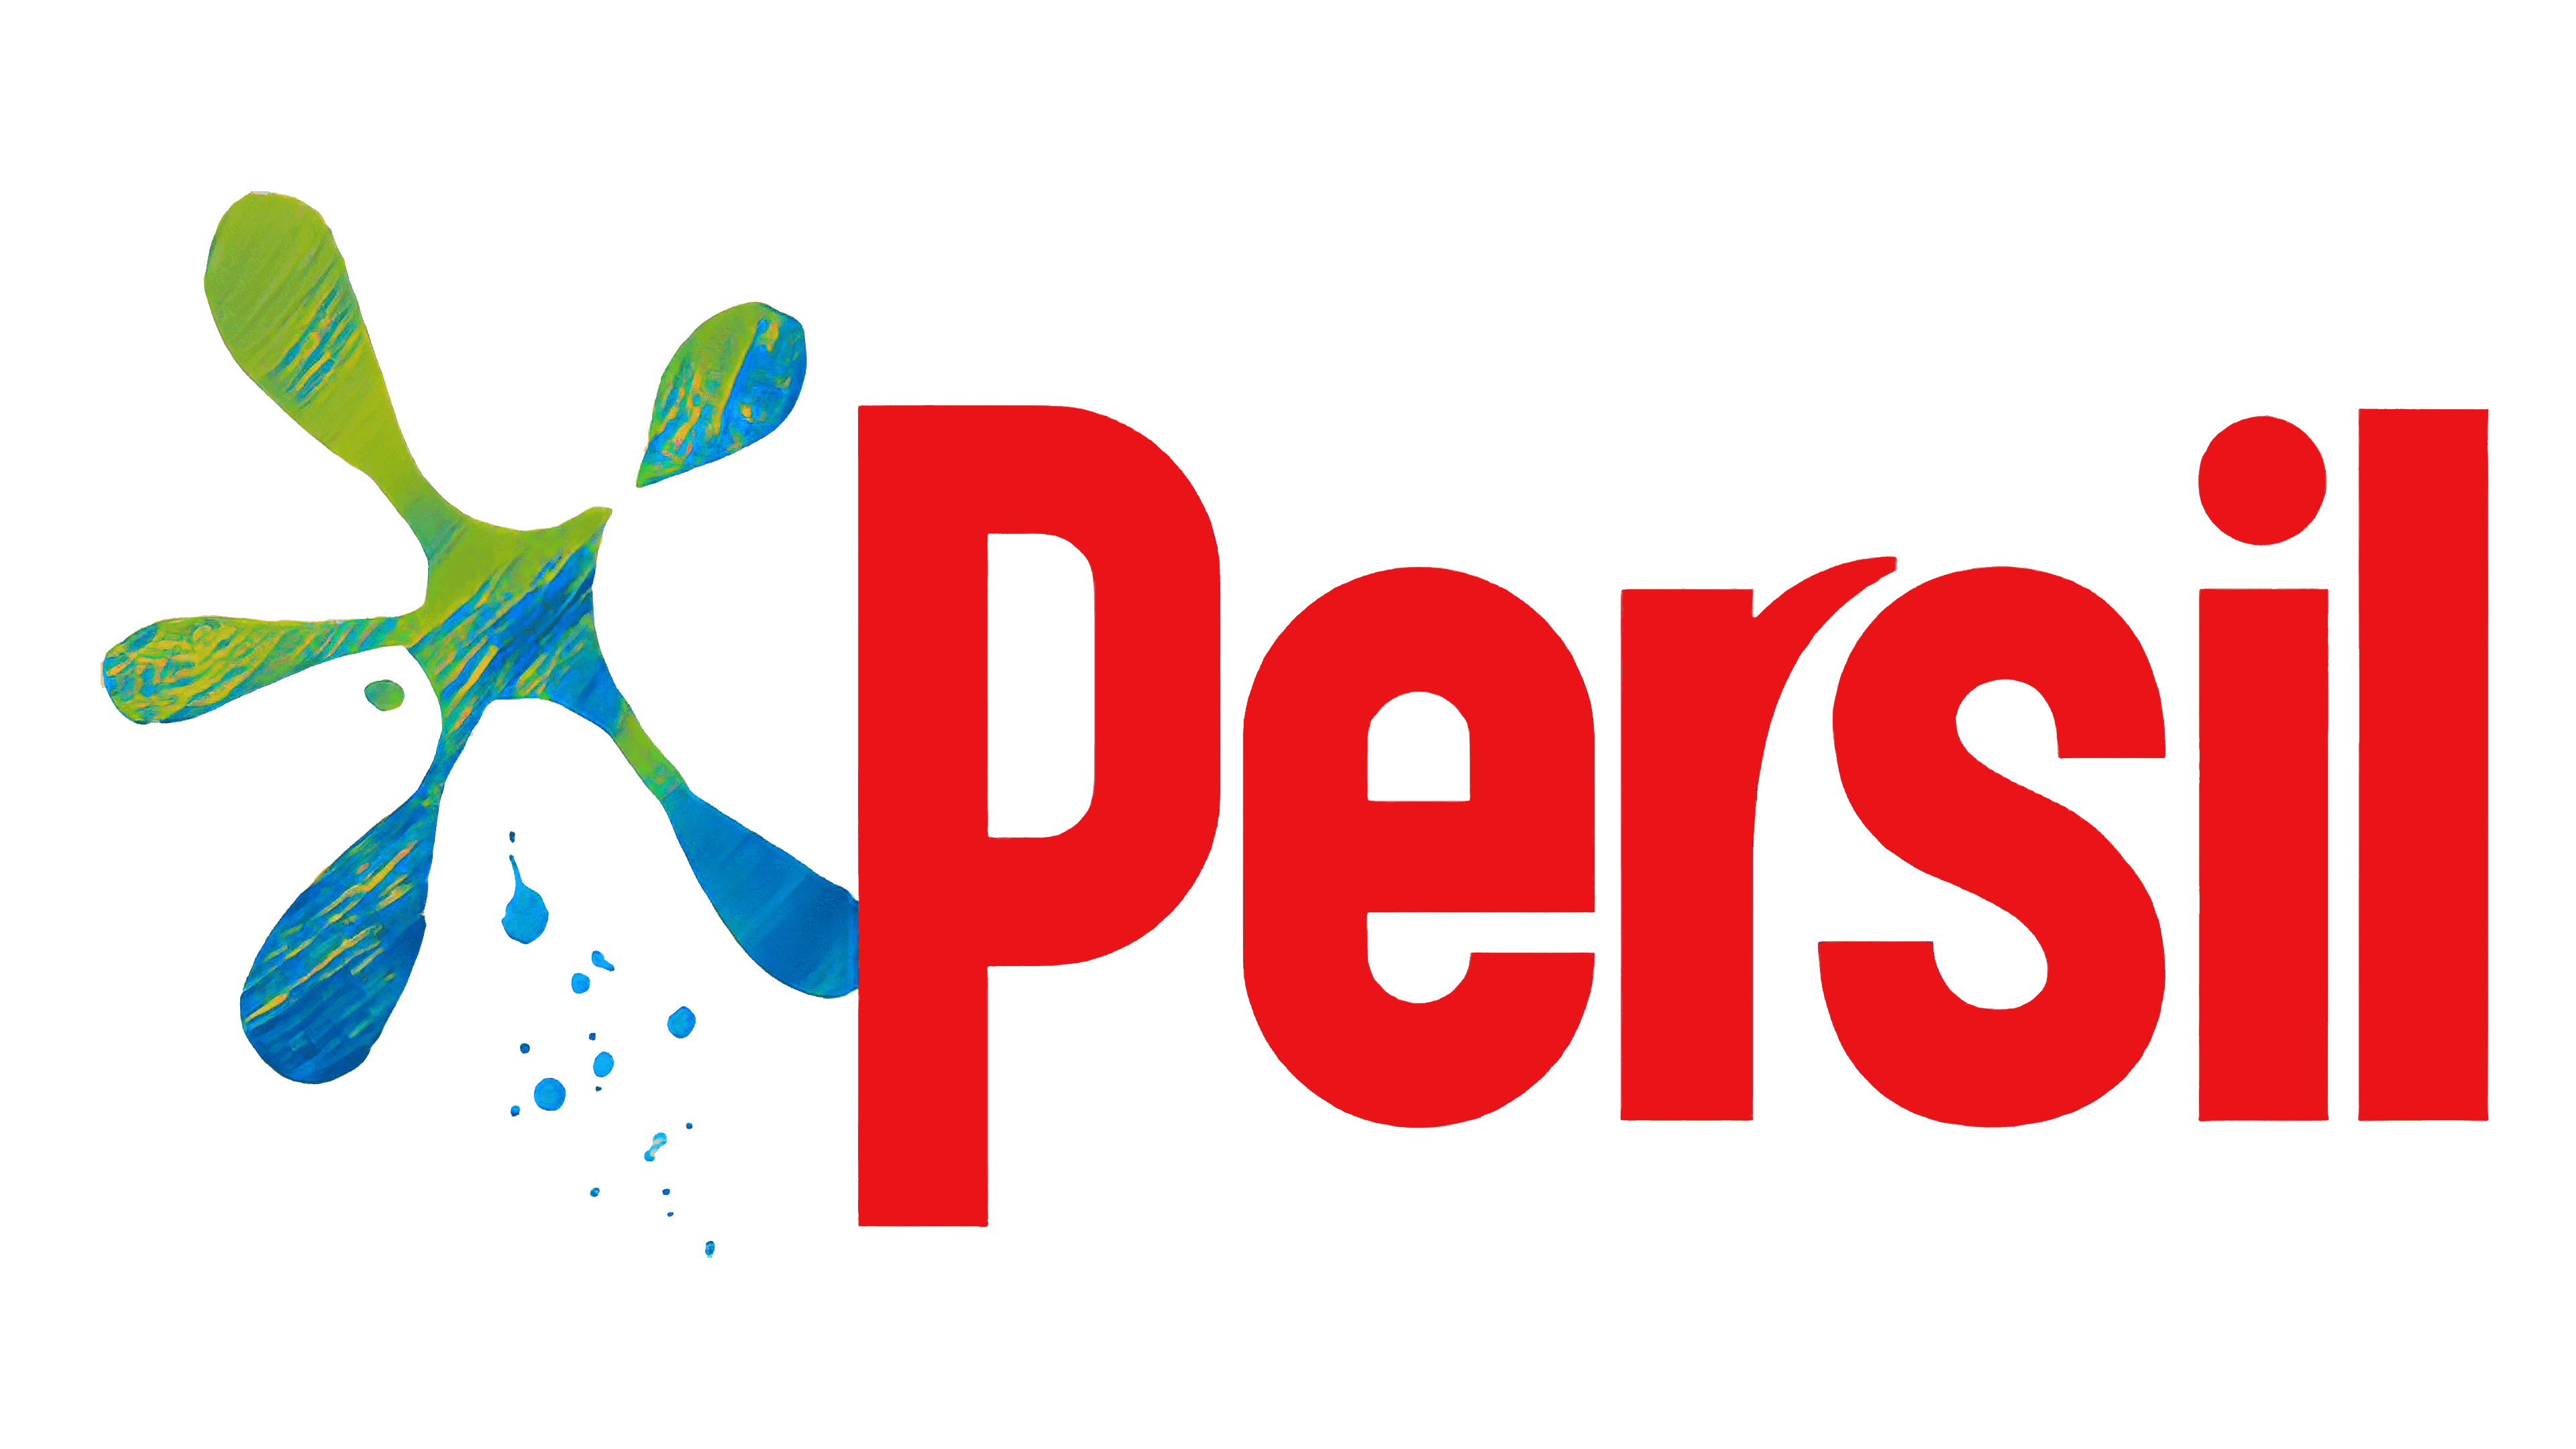 Persil logo